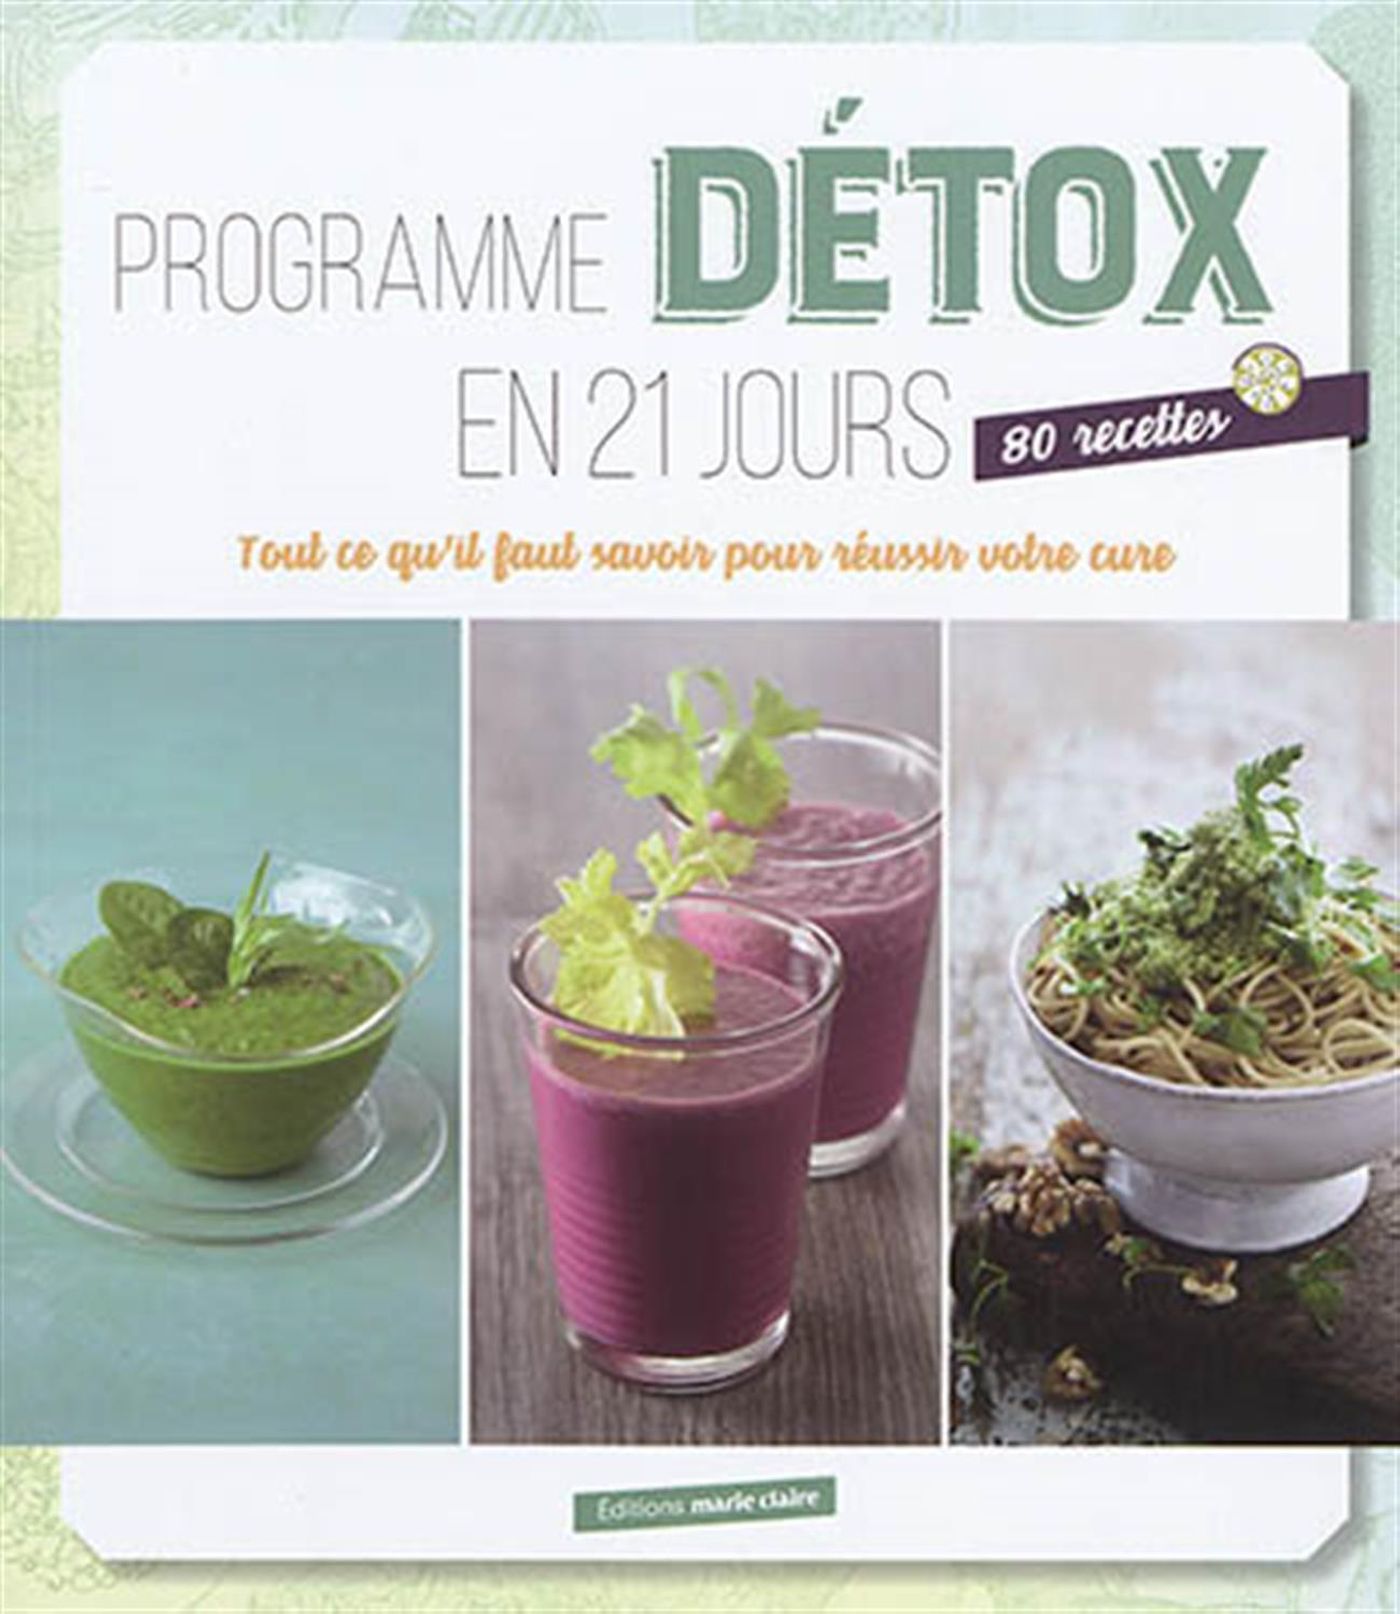 Le régime détox : conseils, programme et liste des aliments detox